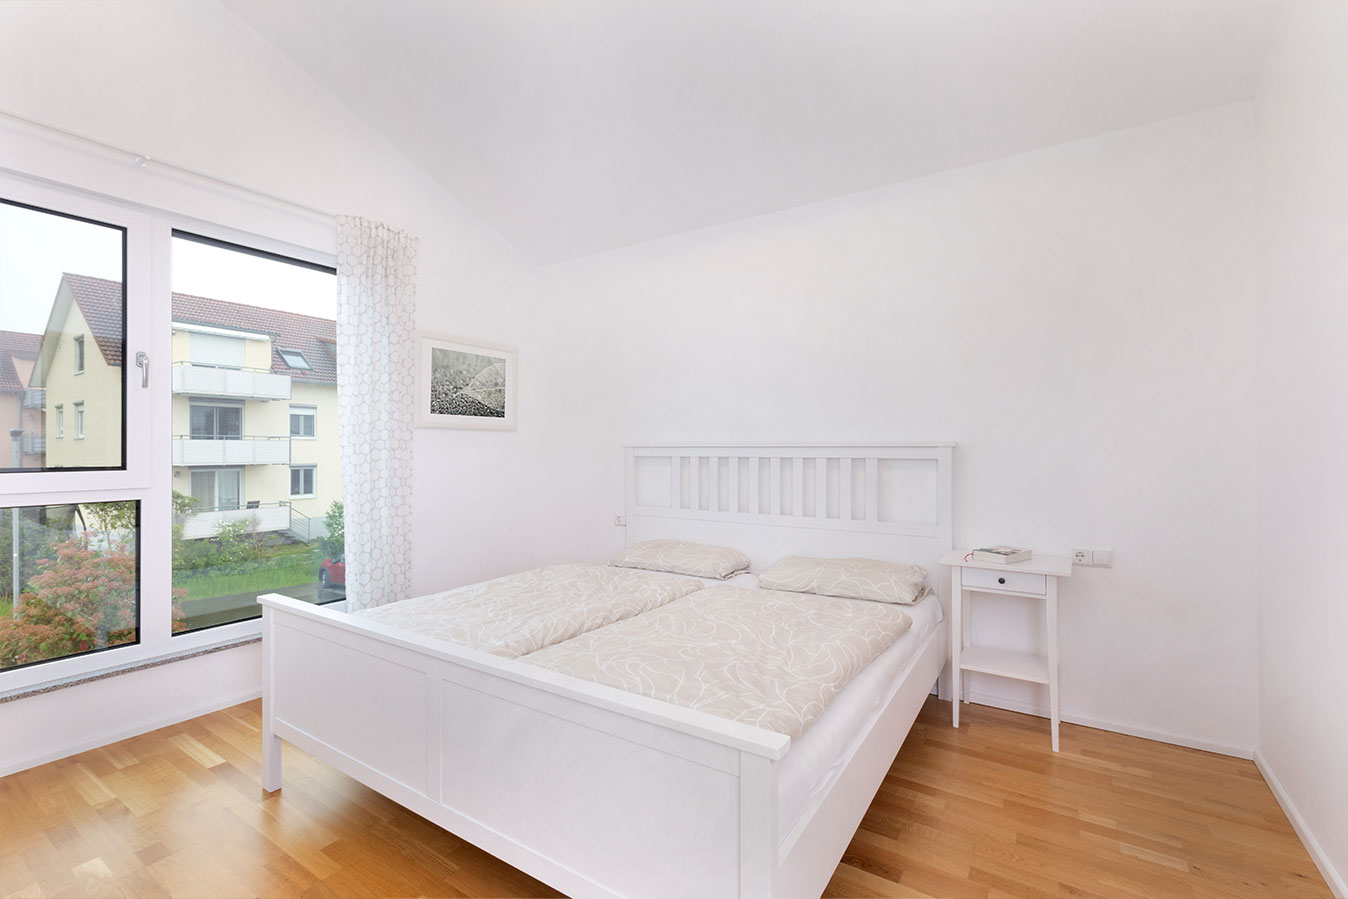 U304-Einfamilienhaus-schlafzimmer-weiß